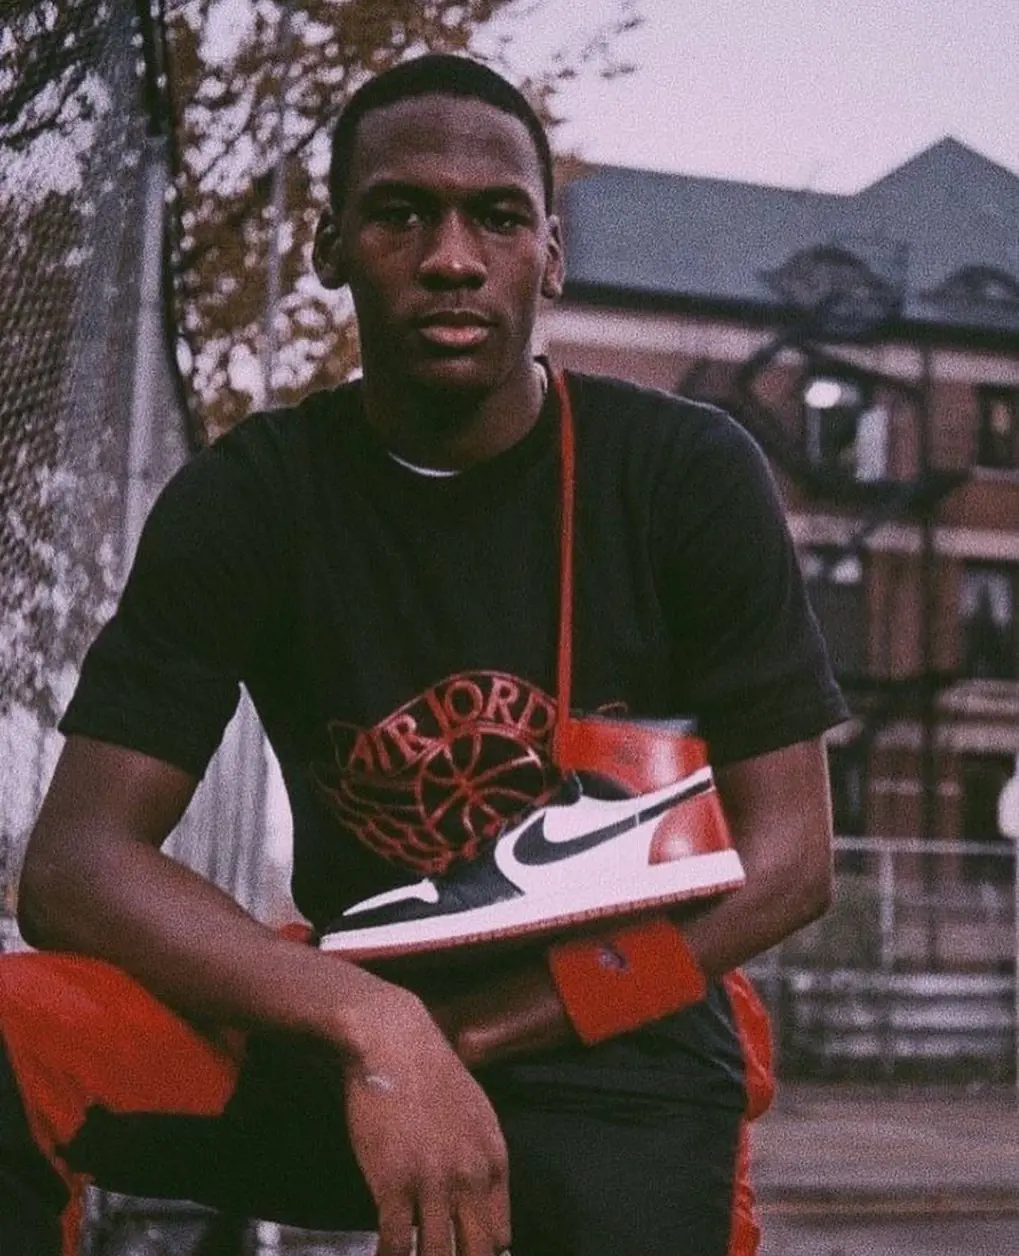 Michael Jordan's youth photo with his Air Jordan sneakers